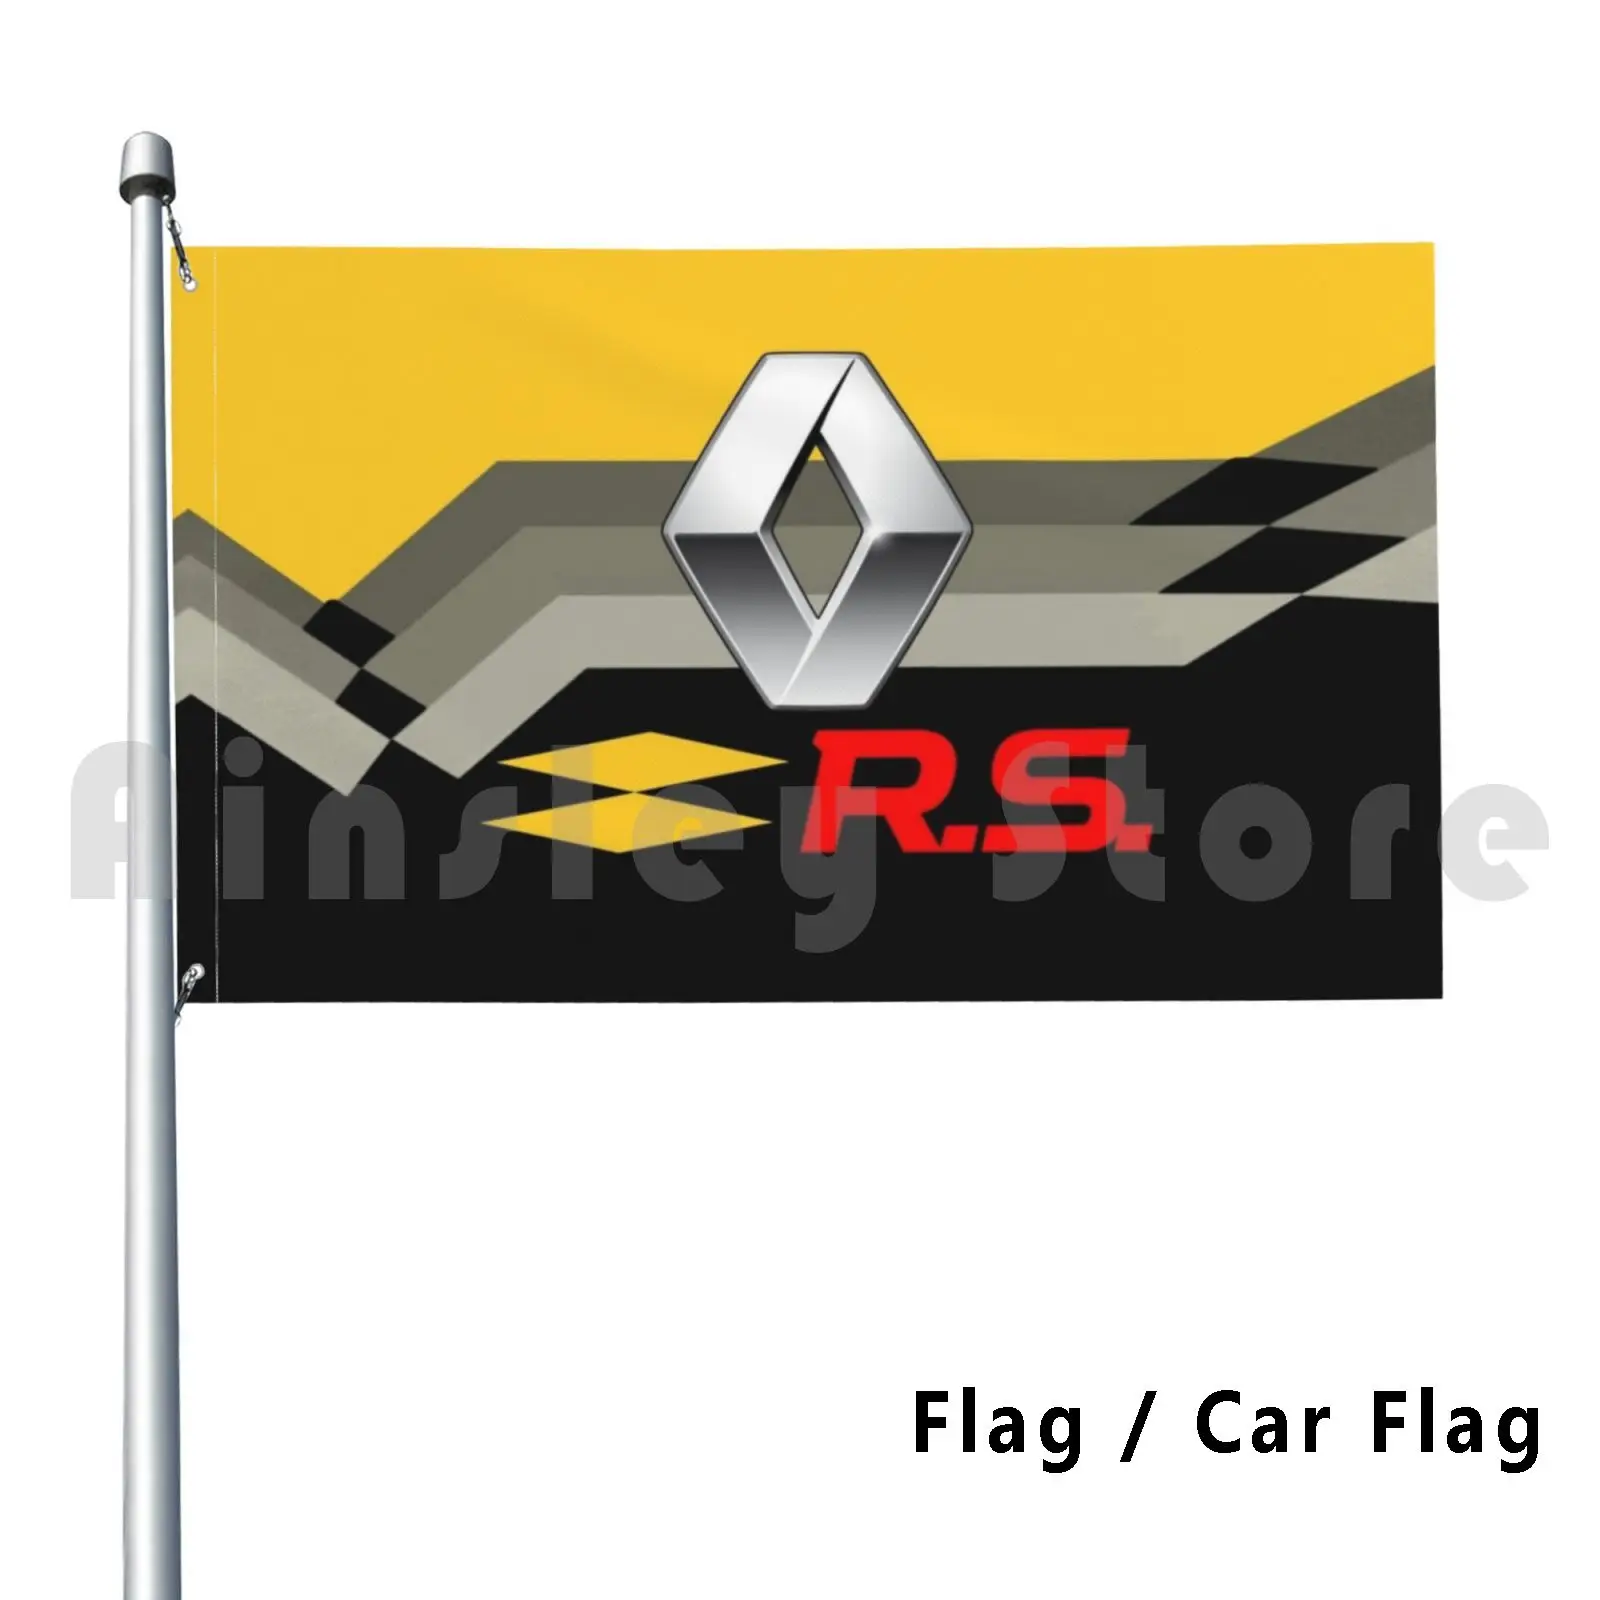 

Rs спорт, уличный декор, флаг, Автомобильный флаг, легенда, автомобили, Франция, цена, Монако, Clio, спортивное кольцо, Grand Motosport